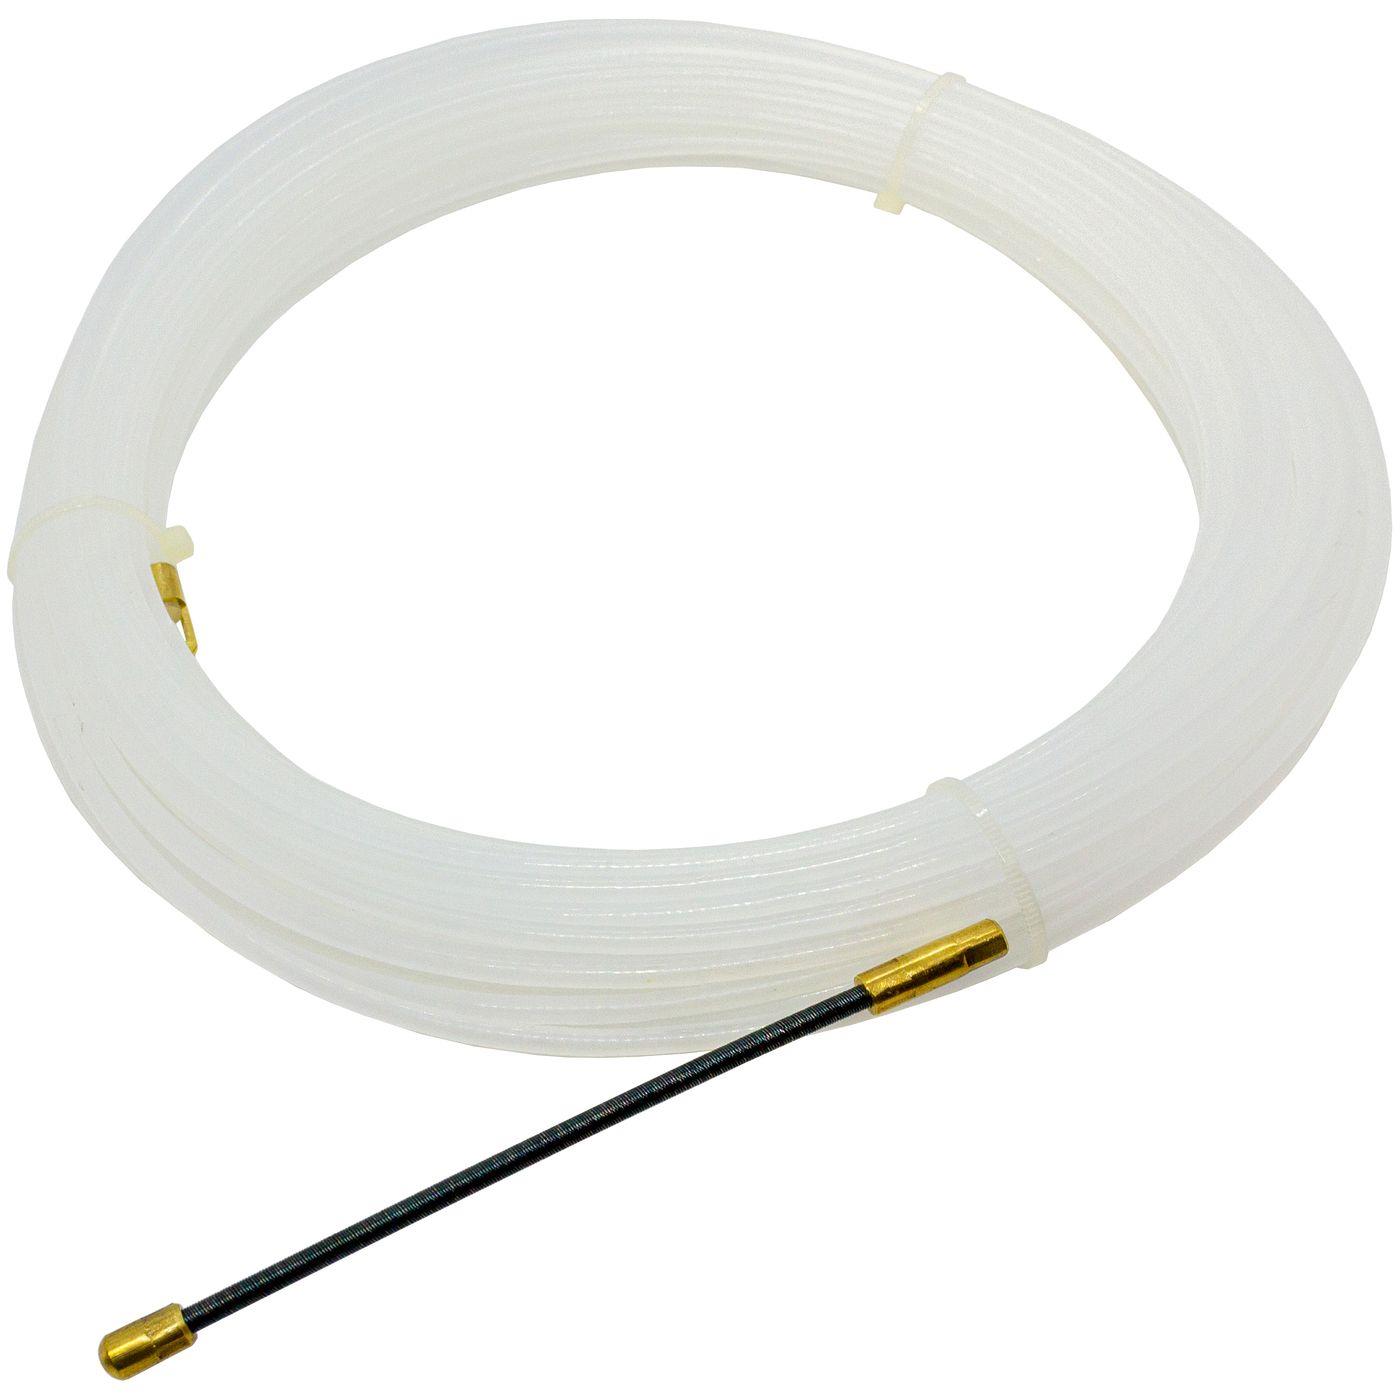 30m Kabeleinziehhilfe 4mm Polyamid Nylon Zugdraht mit Führungsfeder Kabel Einziehband